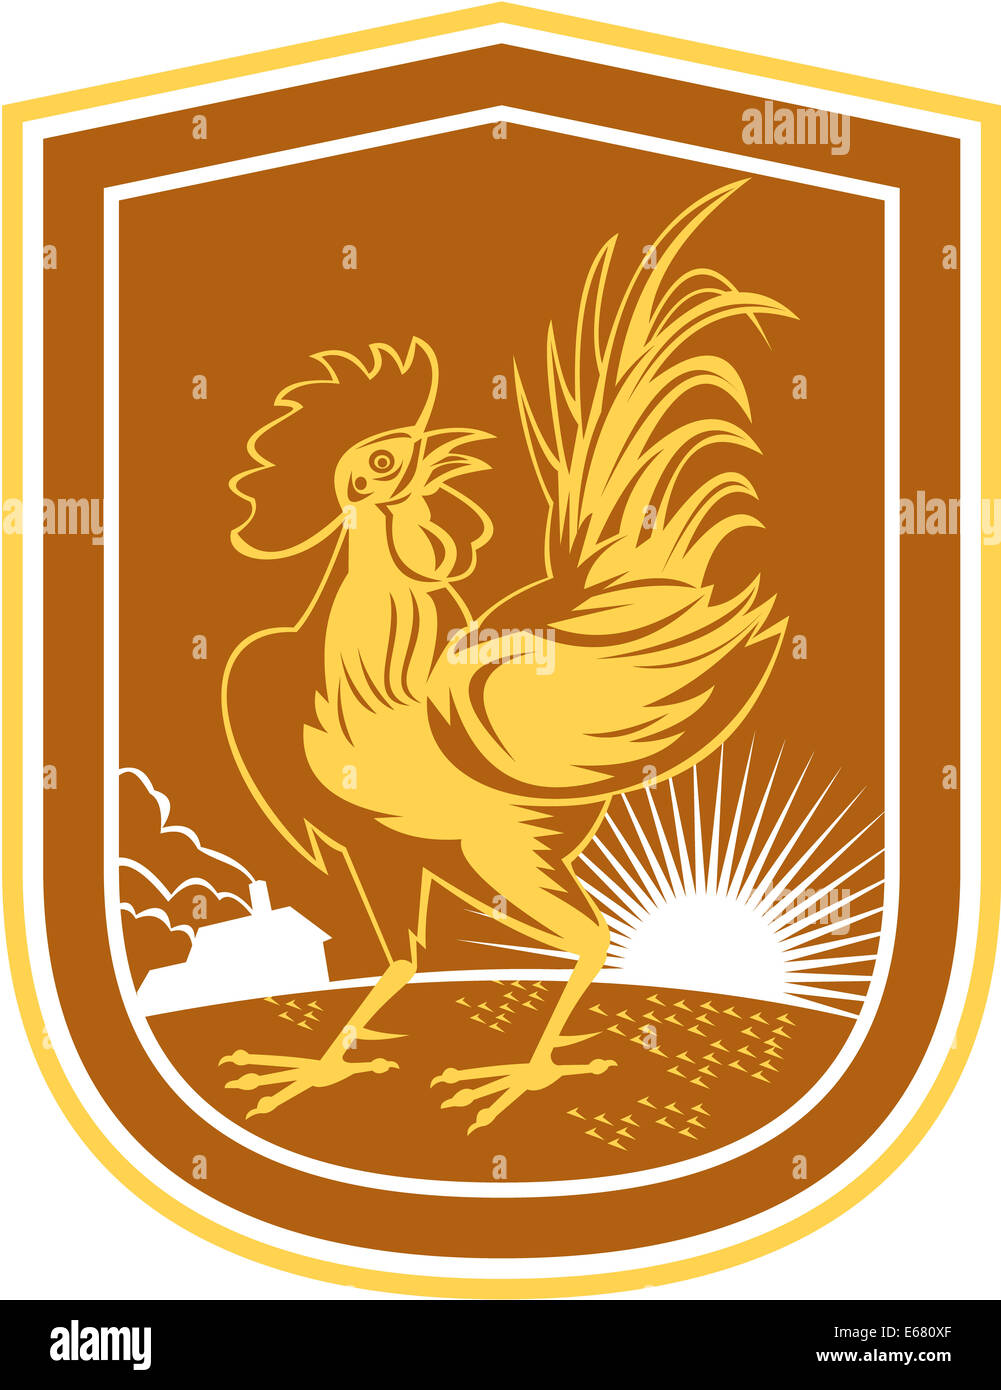 Abbildung von einem Huhn Hahn zugewandten Seite im Inneren Schild Wappen mit Haus Bauernhof und Sunburst im Hintergrund getan im retro-Stil. Stockfoto